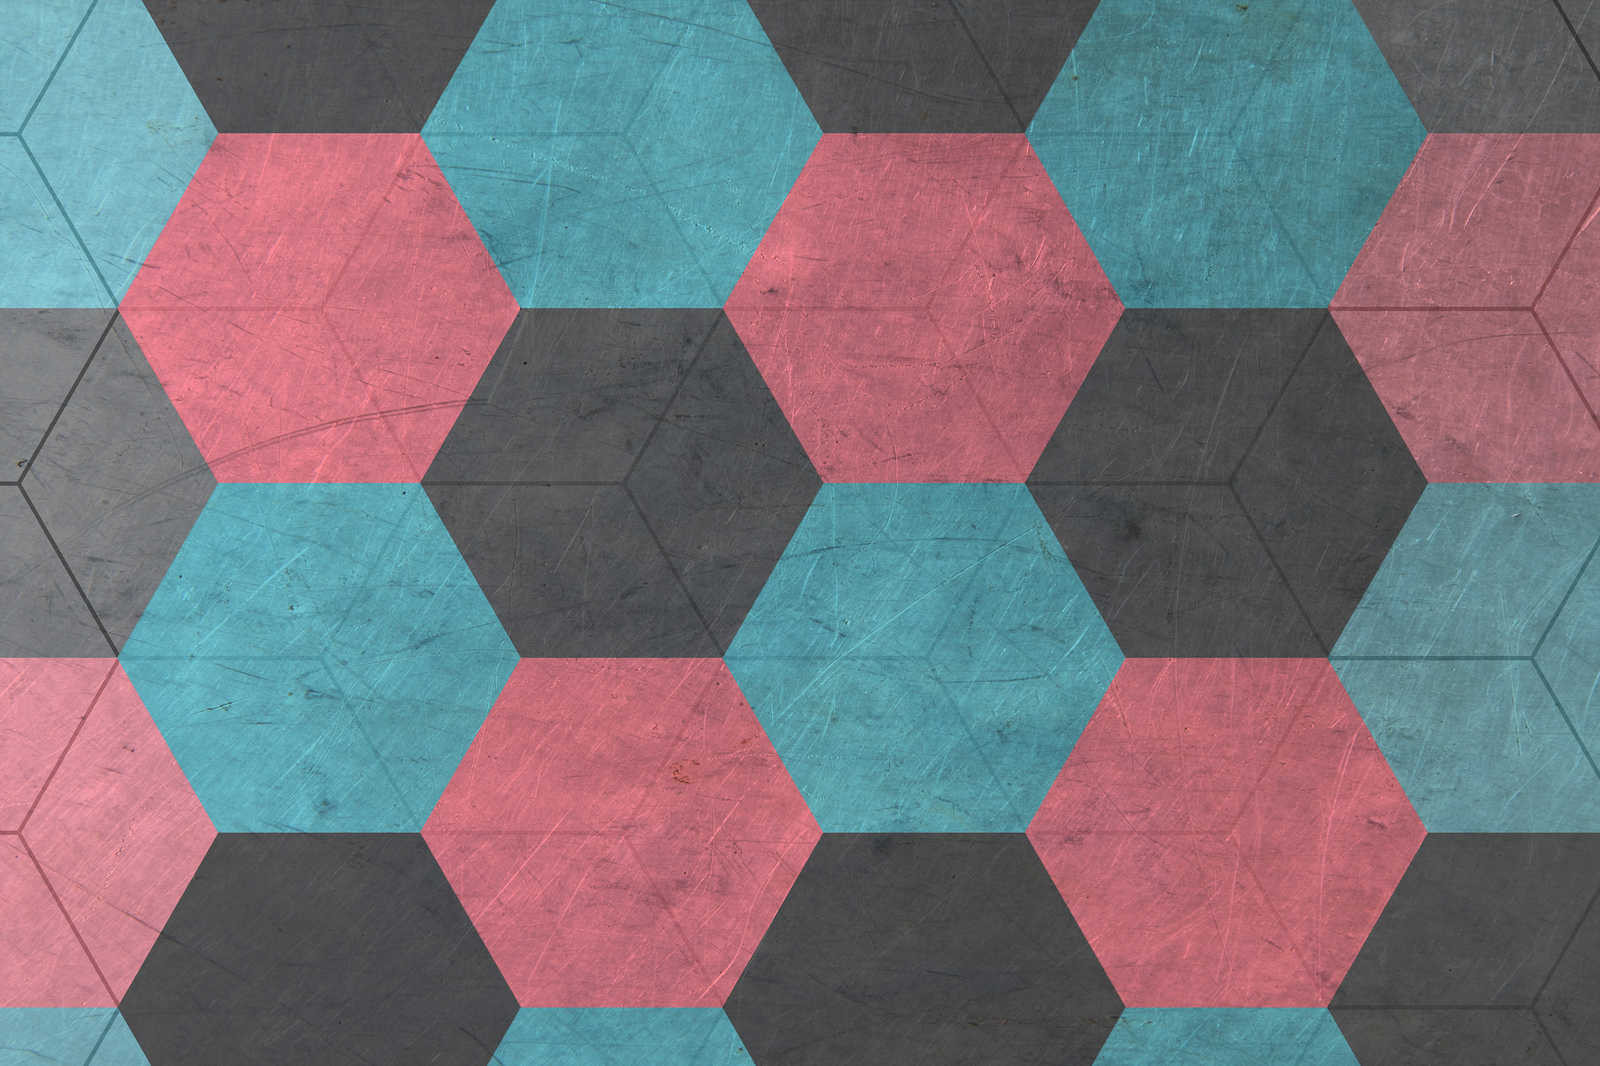             Leinwandbild Hexagon Kacheln im Vintage Look – 0,90 m x 0,60 m
        